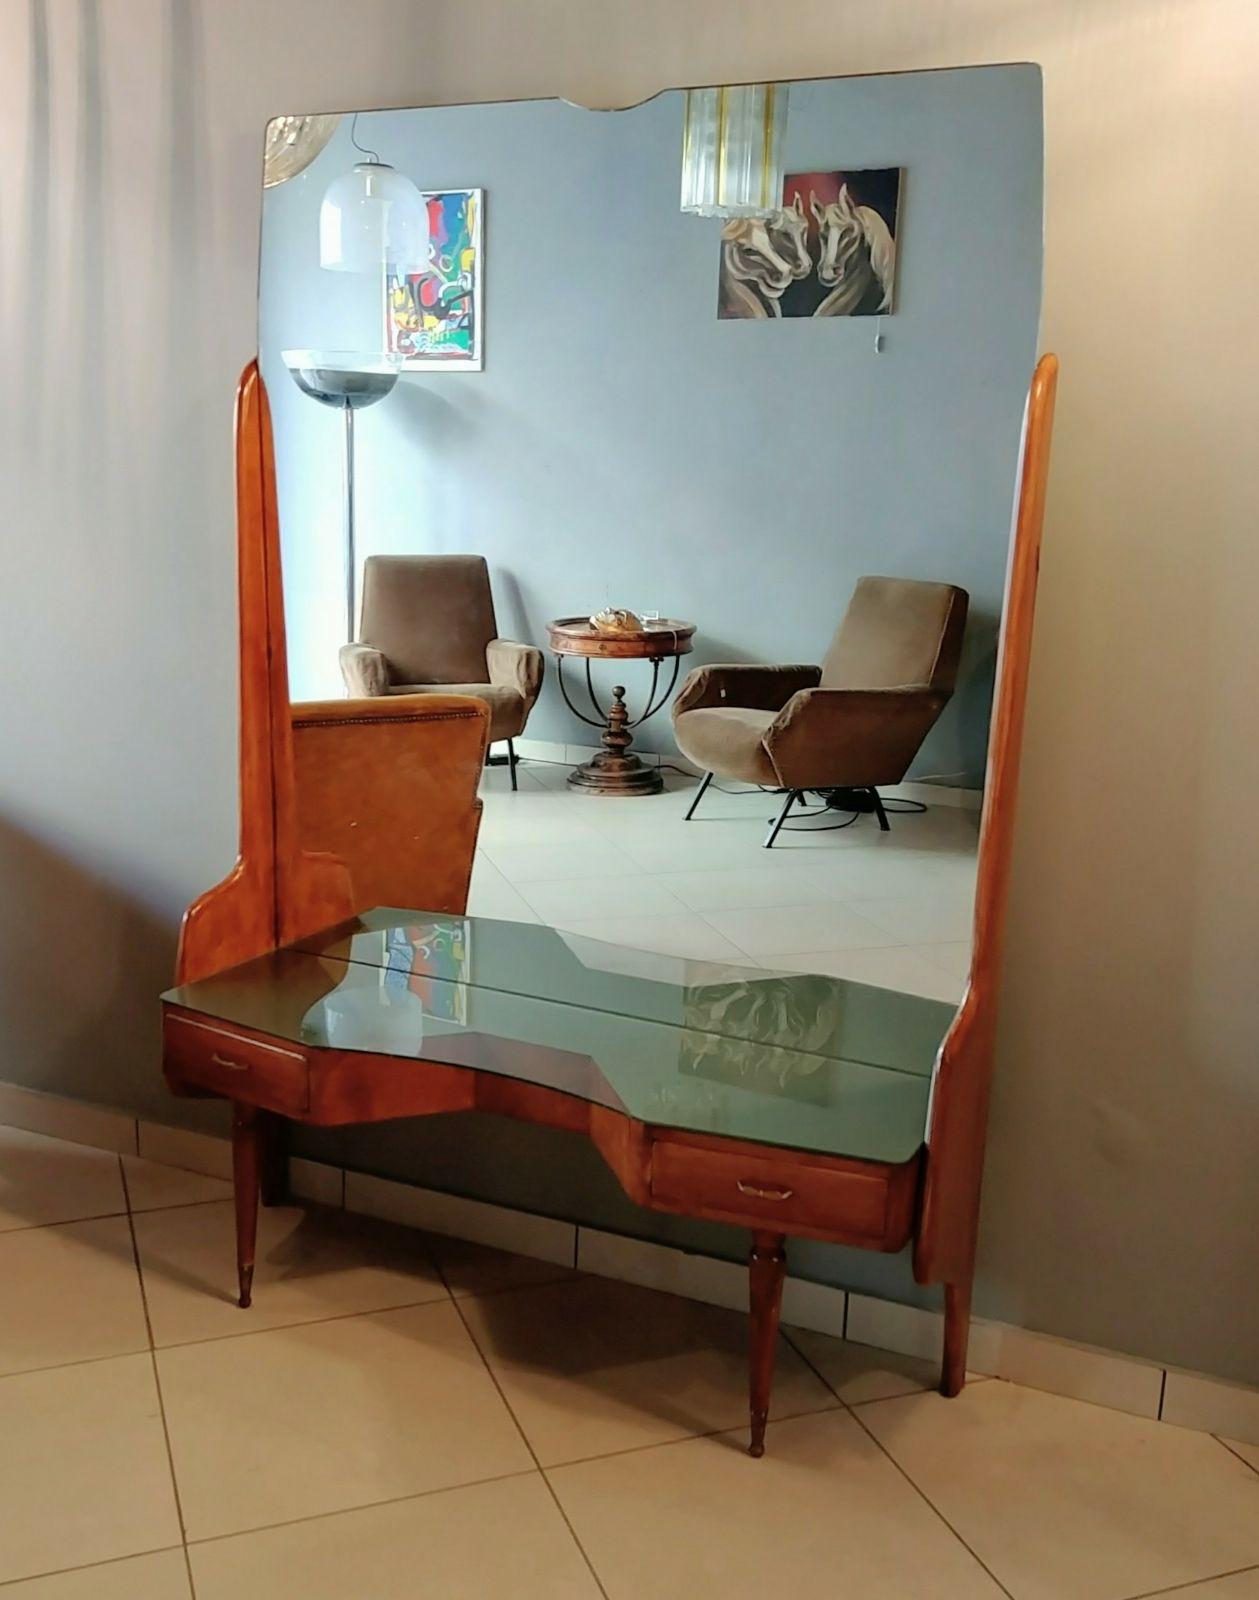 Vittorio Dassi, table console de vanité, Italie 1950s
Vanity beauty avec grand miroir original des années 1950 : formes et géométries très particulières.